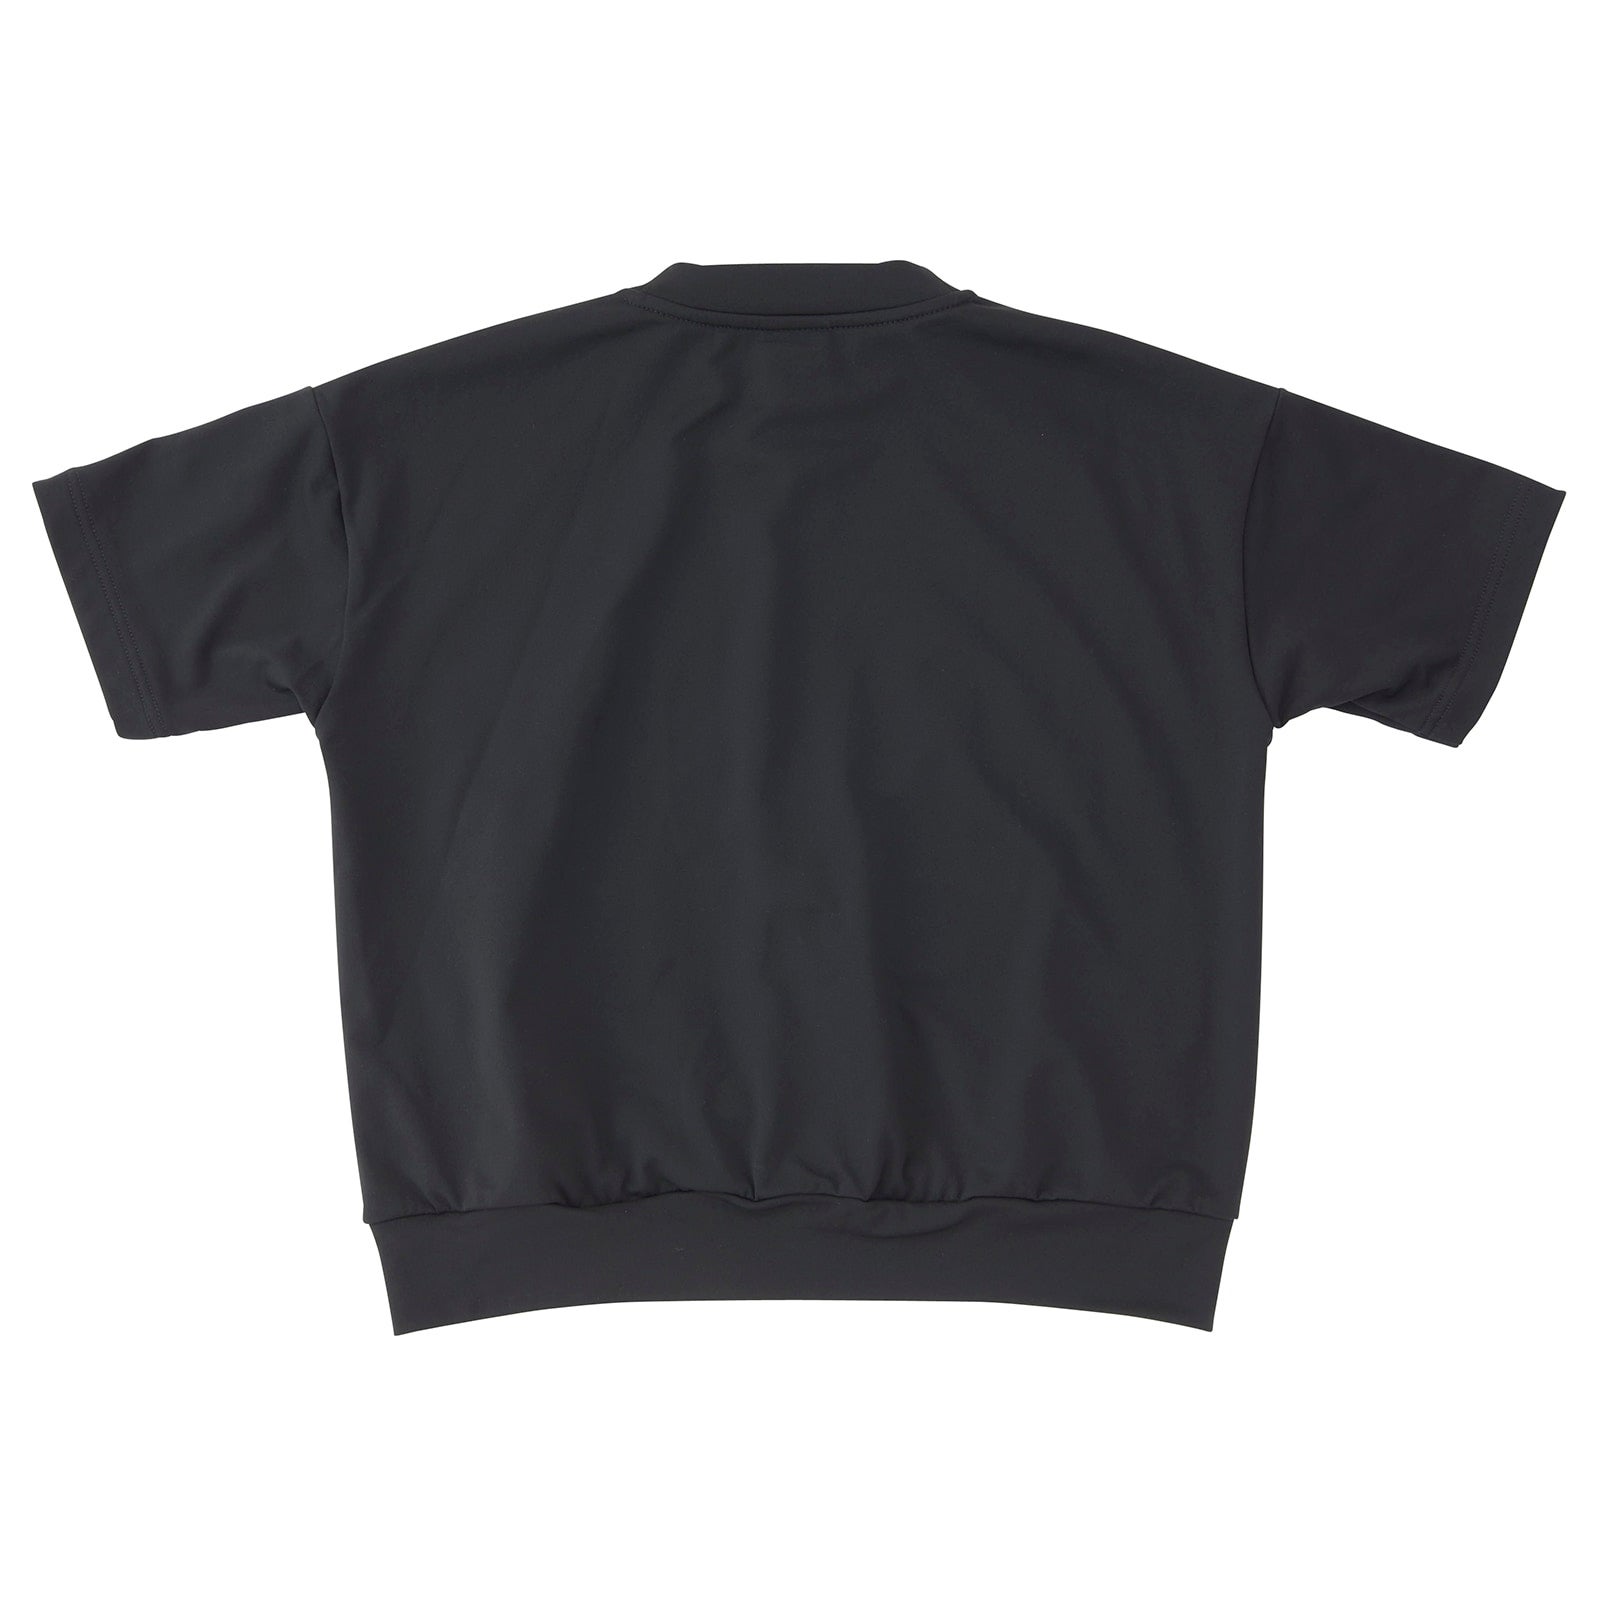 Moisture-wicking, quick-drying sweatshirt-style short-sleeve T-shirt